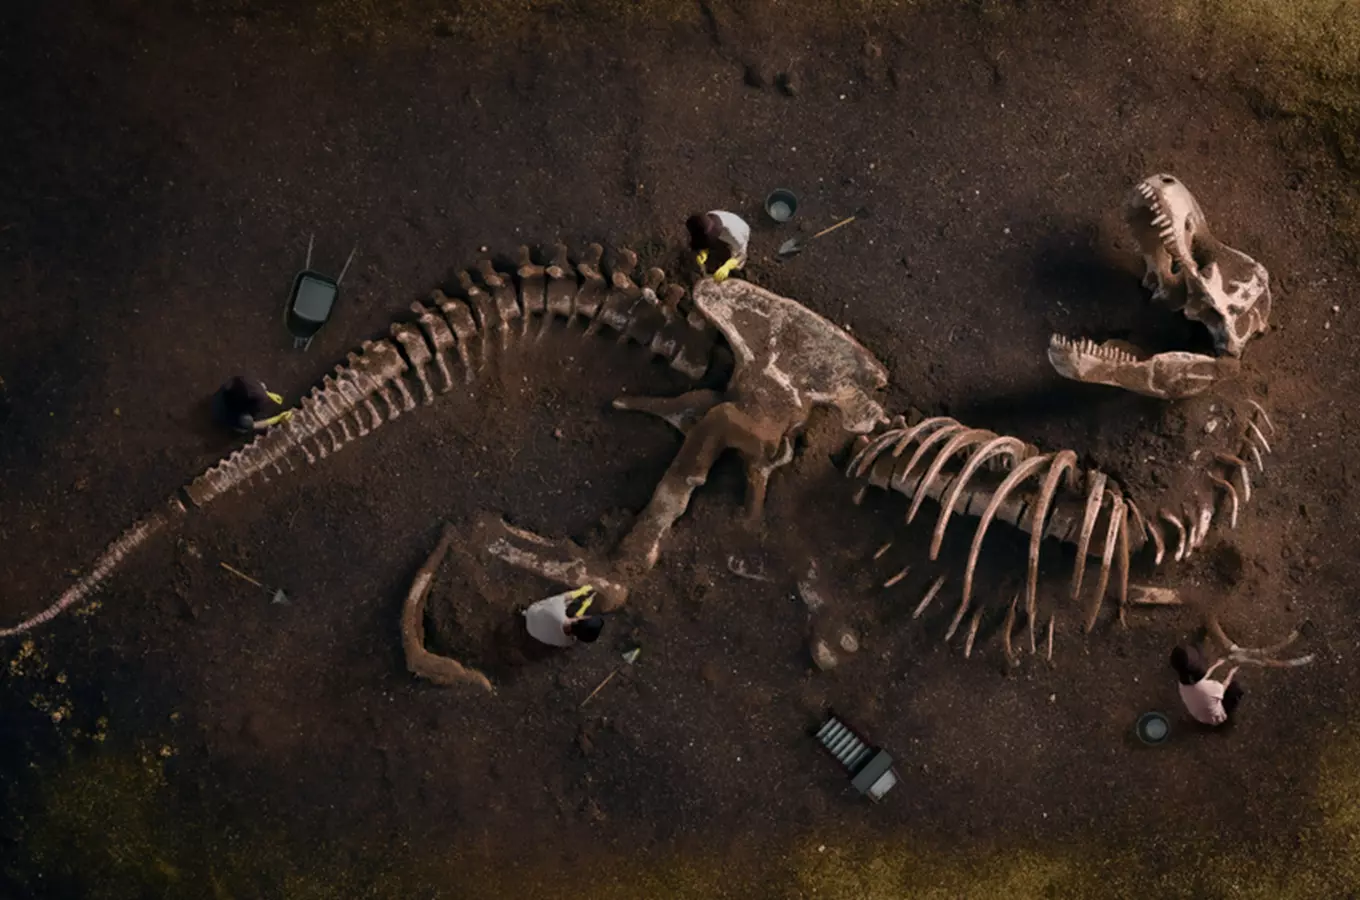 Fascinace dinosaury trvá už 200 let: objev ze Stonesfieldu a první dinosaurus